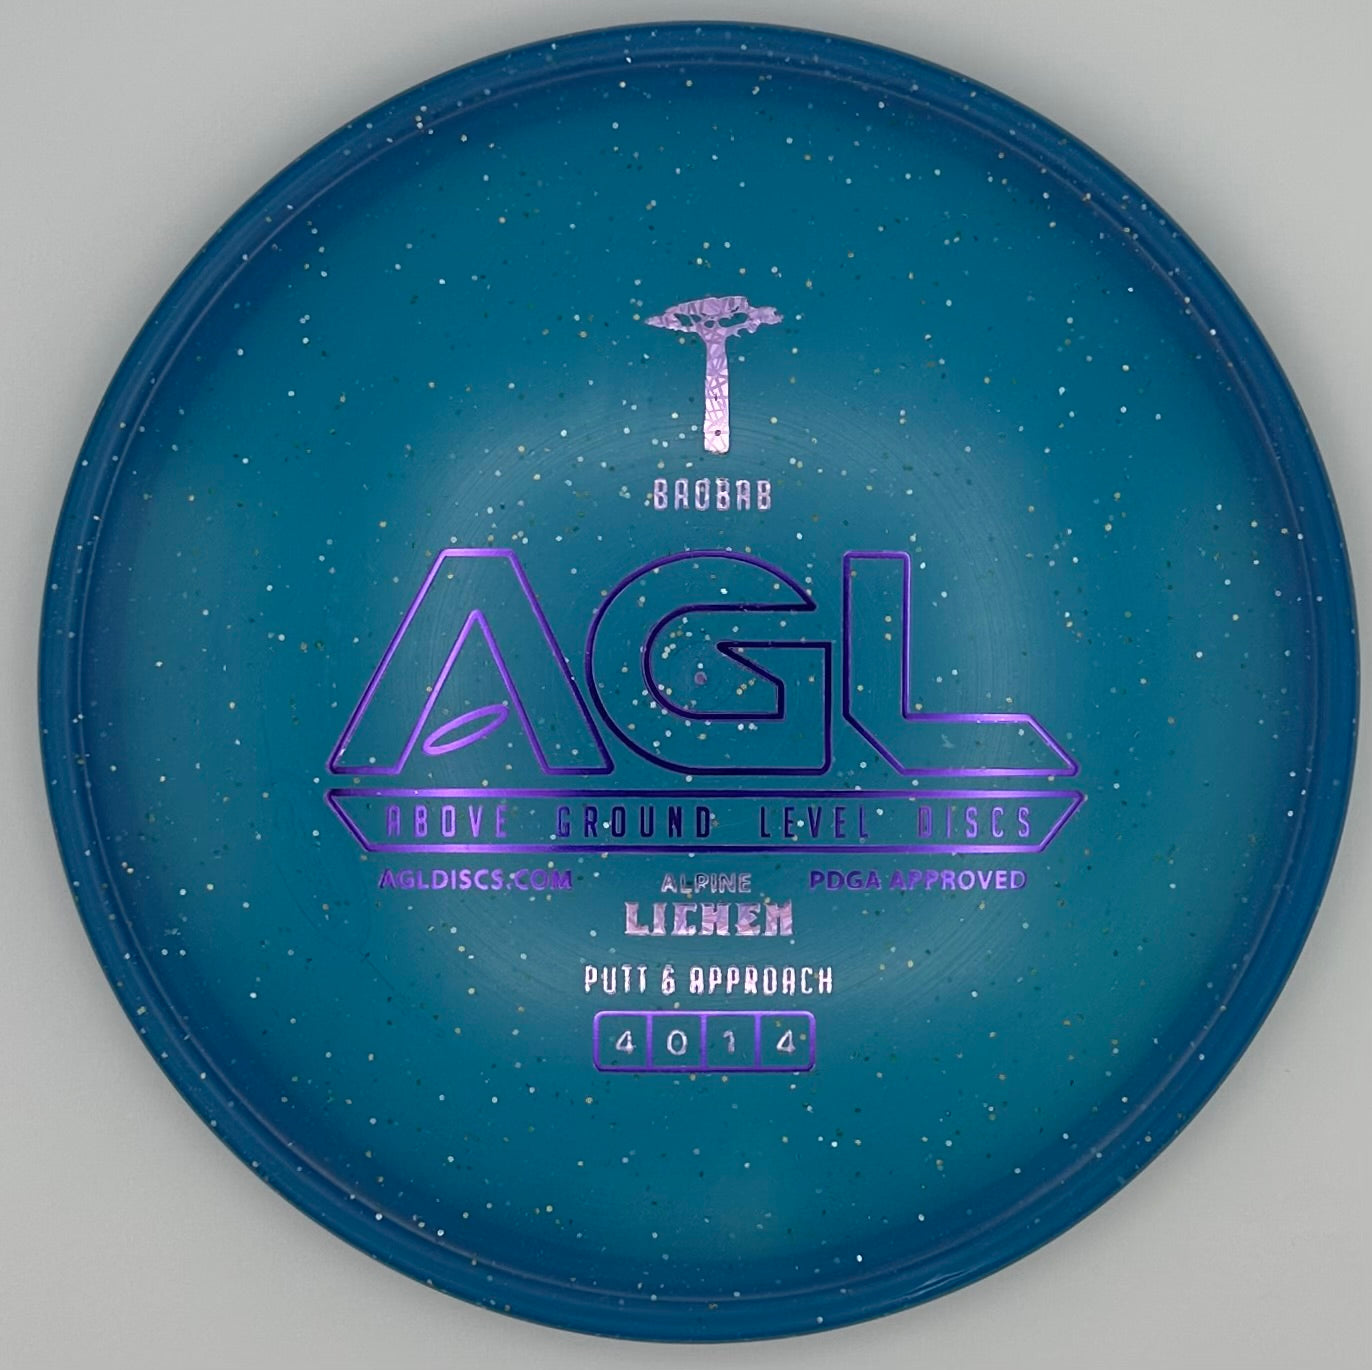 AGL Discs - Blue Alpine Lichen Baobab (AGL Bar Stamp)